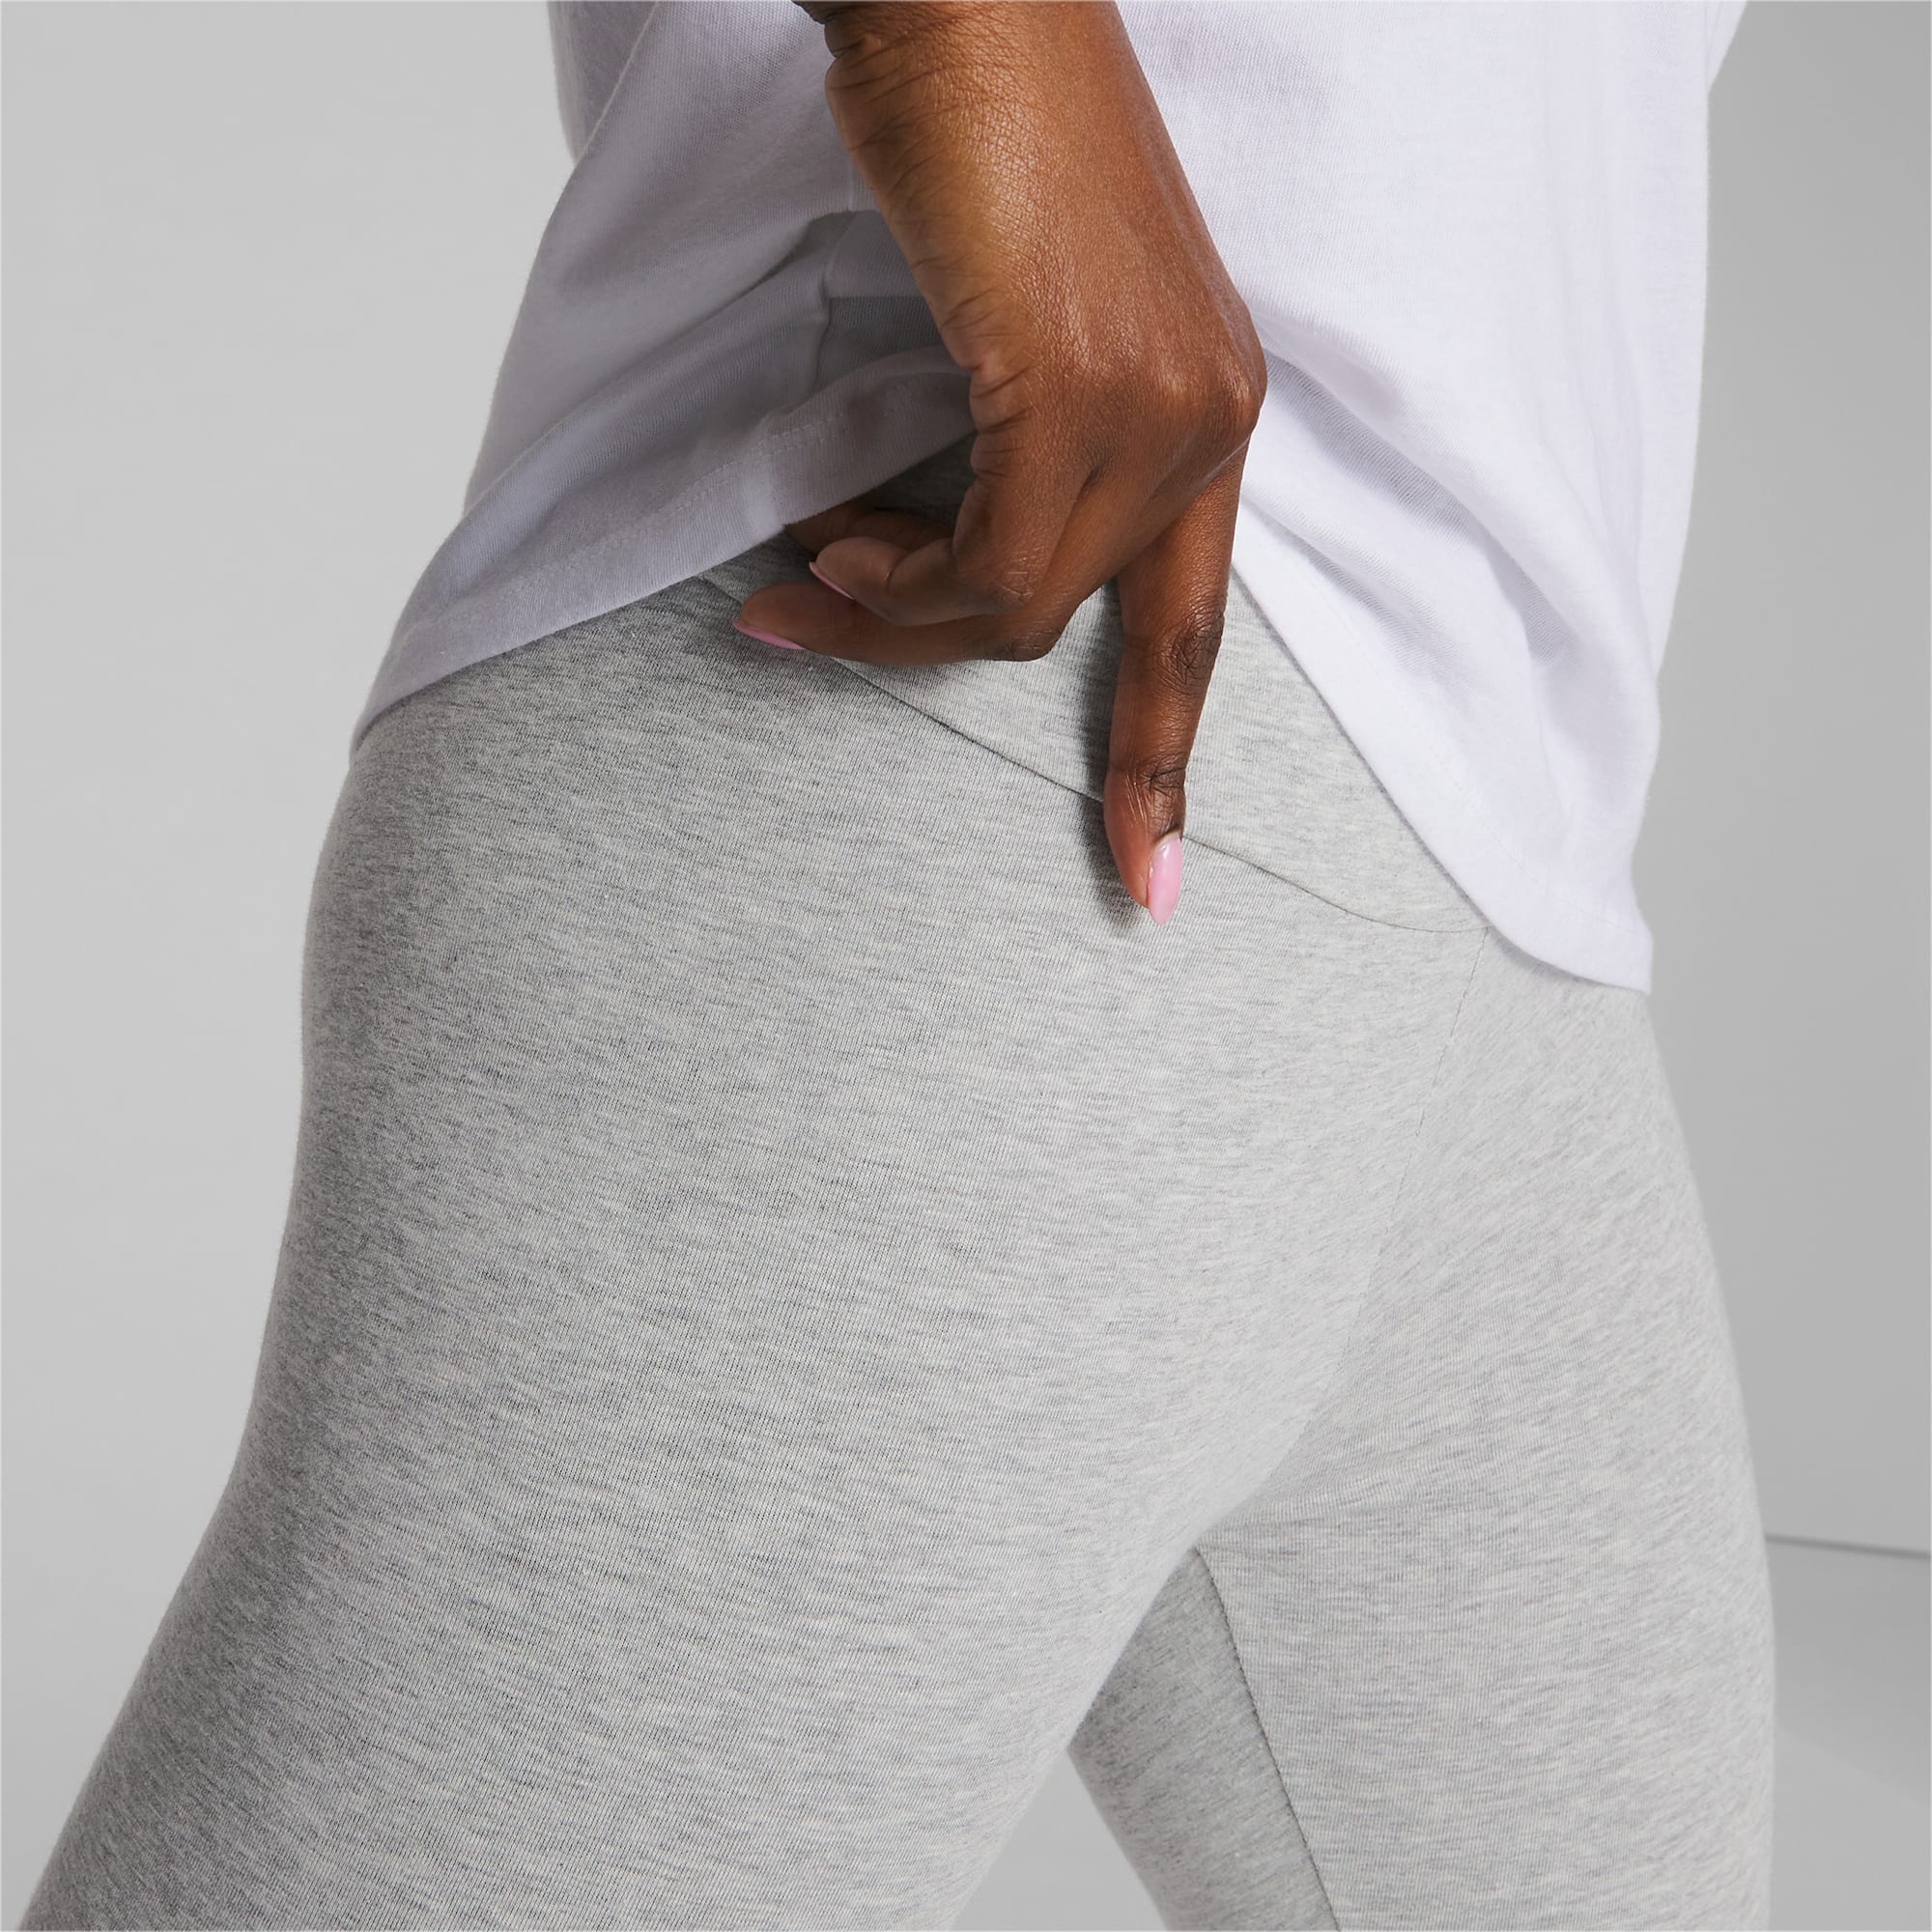 PUMA Women's Essentials+ Colourblock Leggings, Black, X-Large at